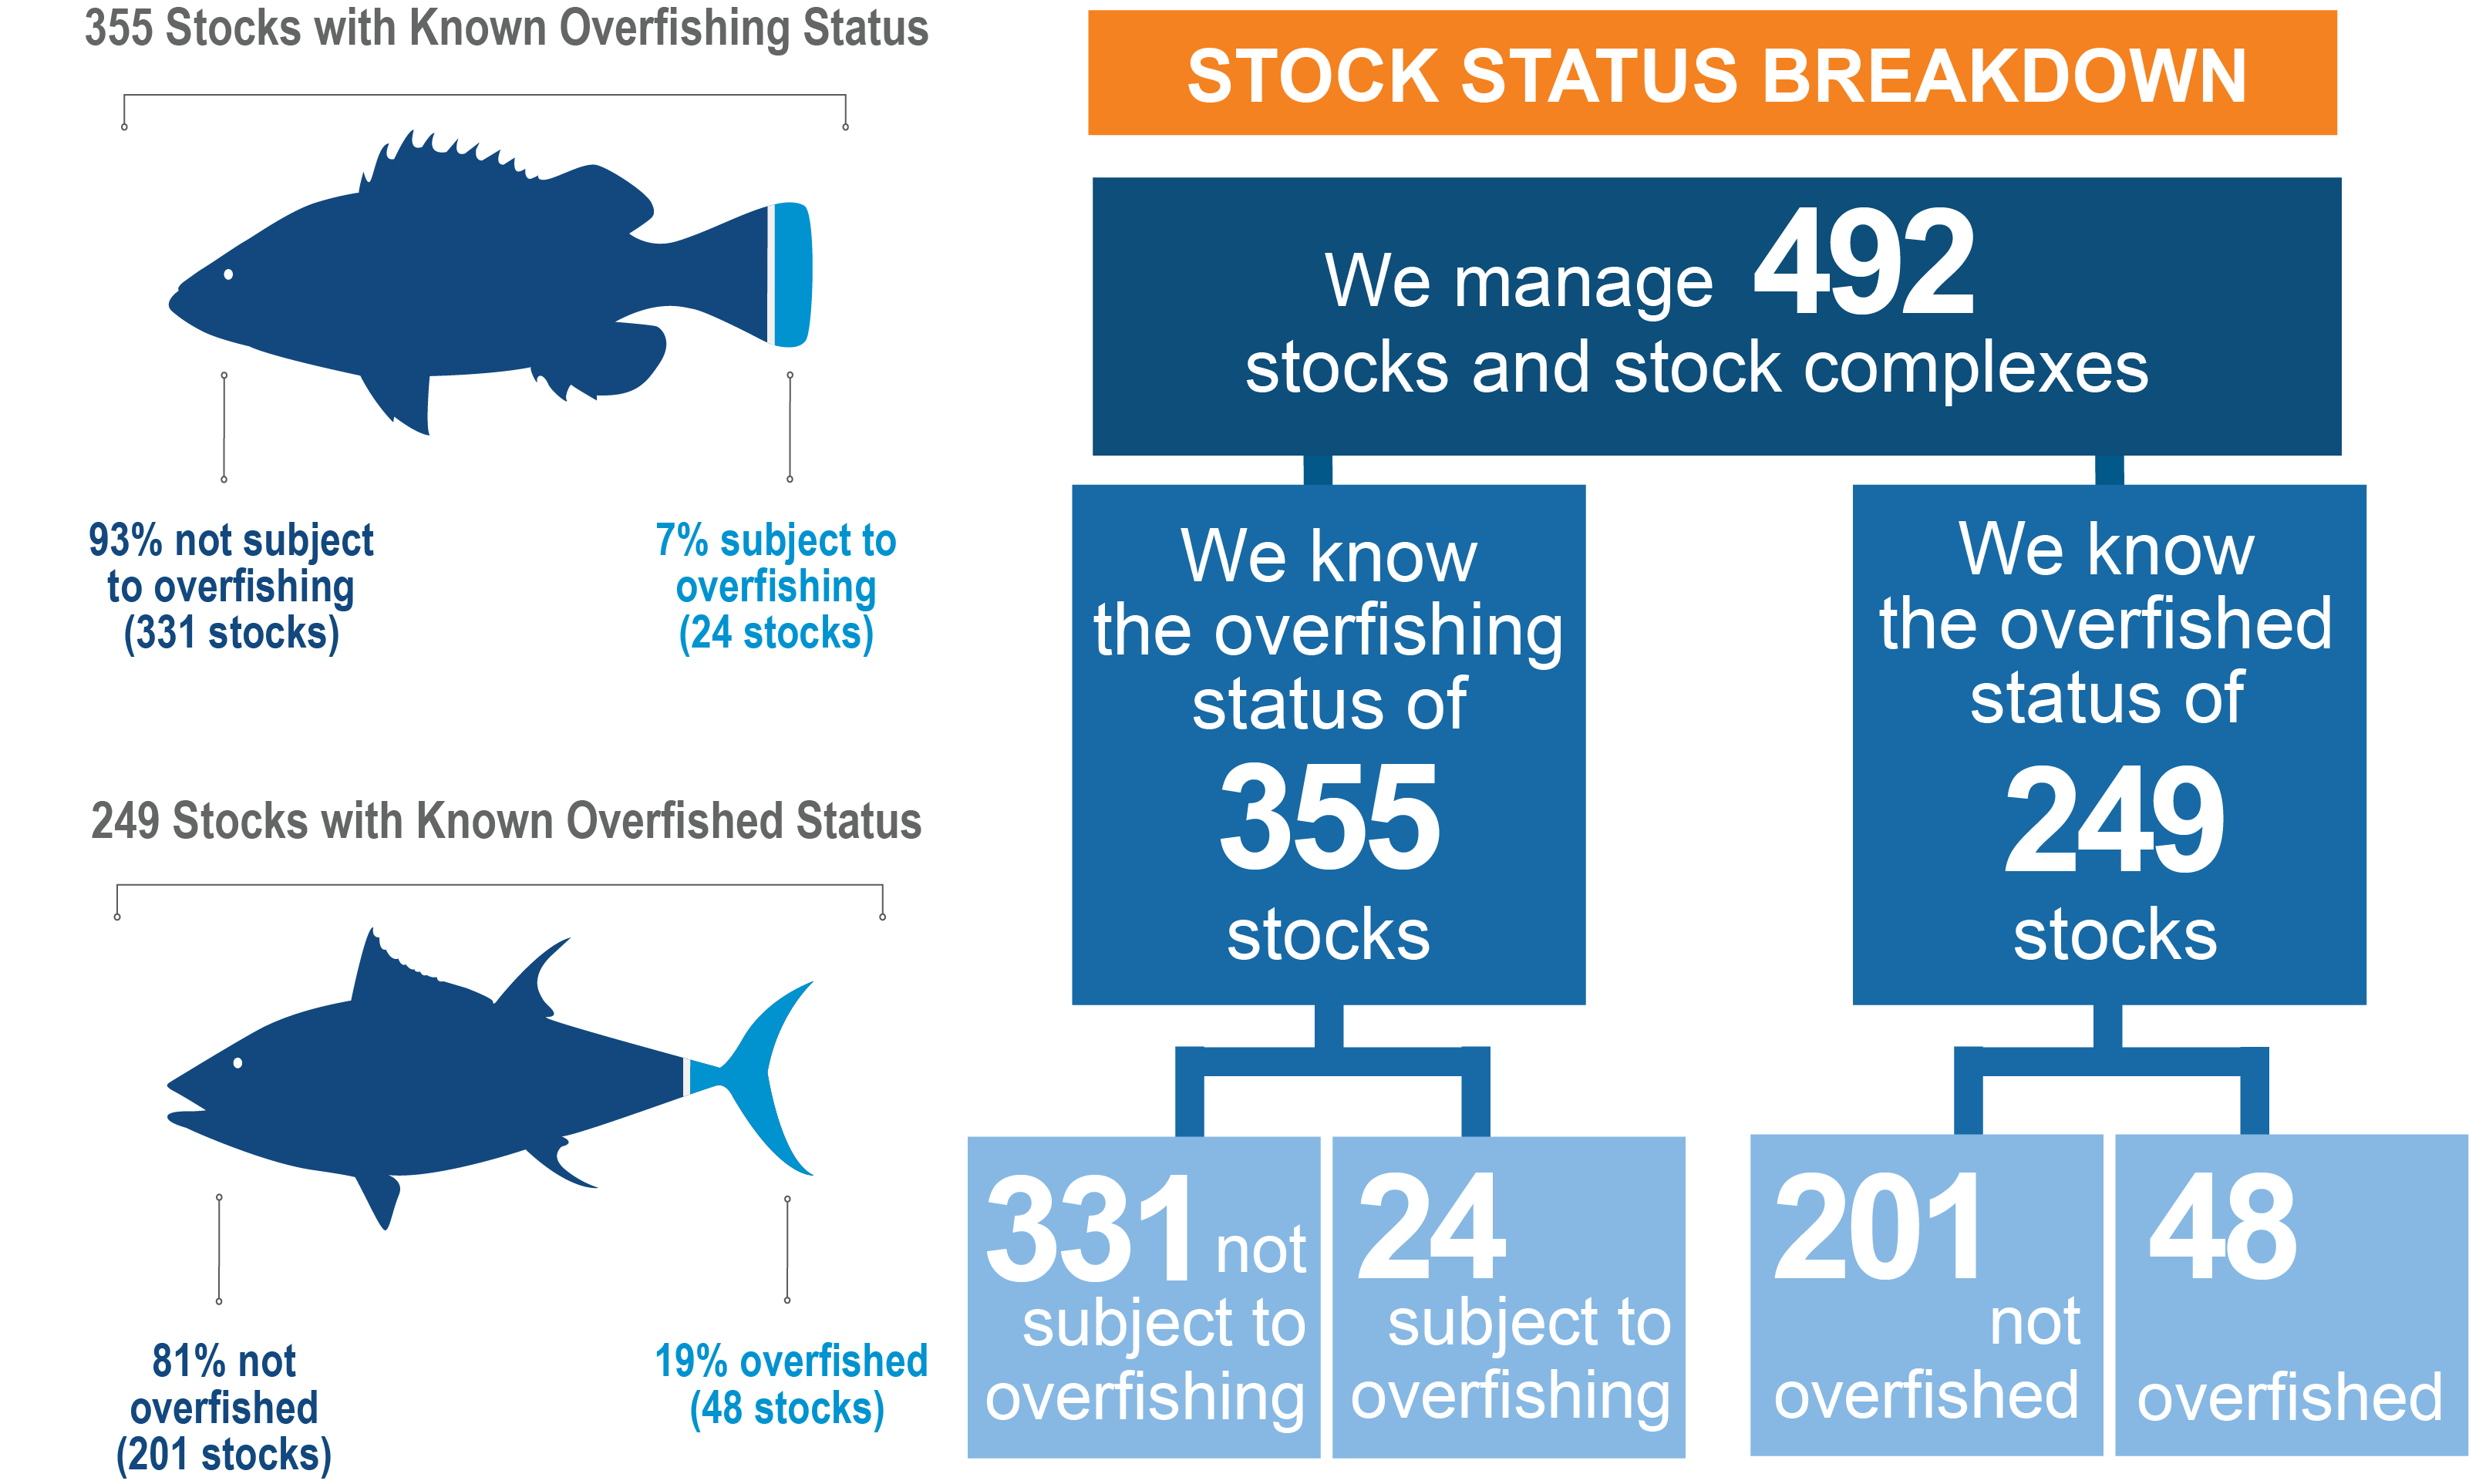 Stockfish progress 2022 - rating CEDR